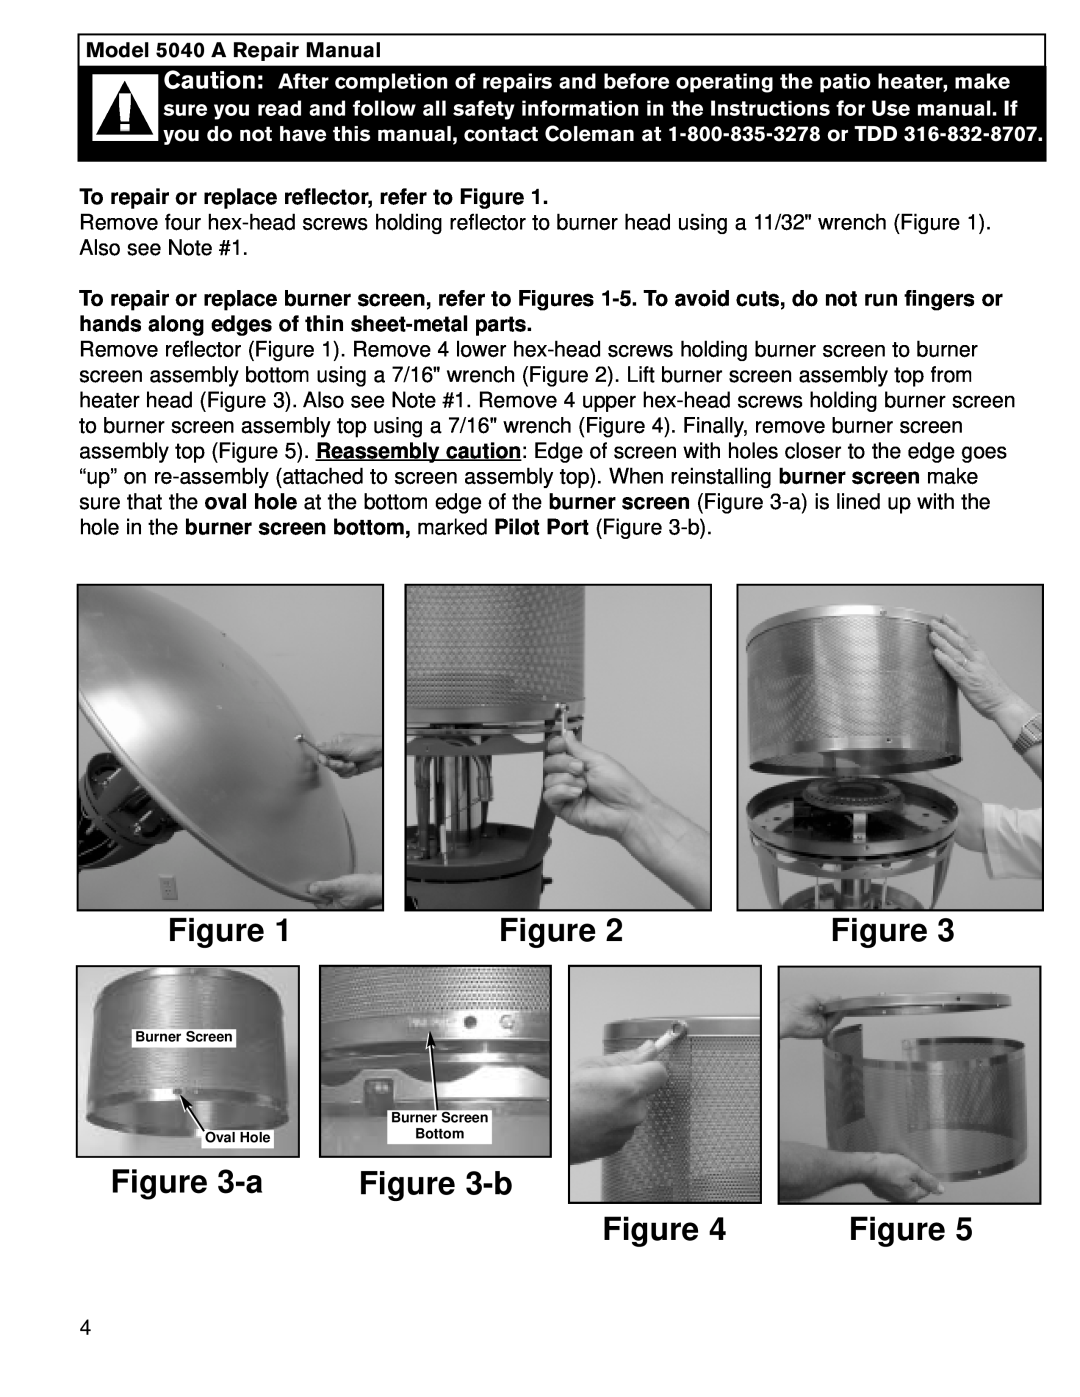 Coleman manual b, Model 5040 A Repair Manual, To repair or replace reflector, refer to Figure 